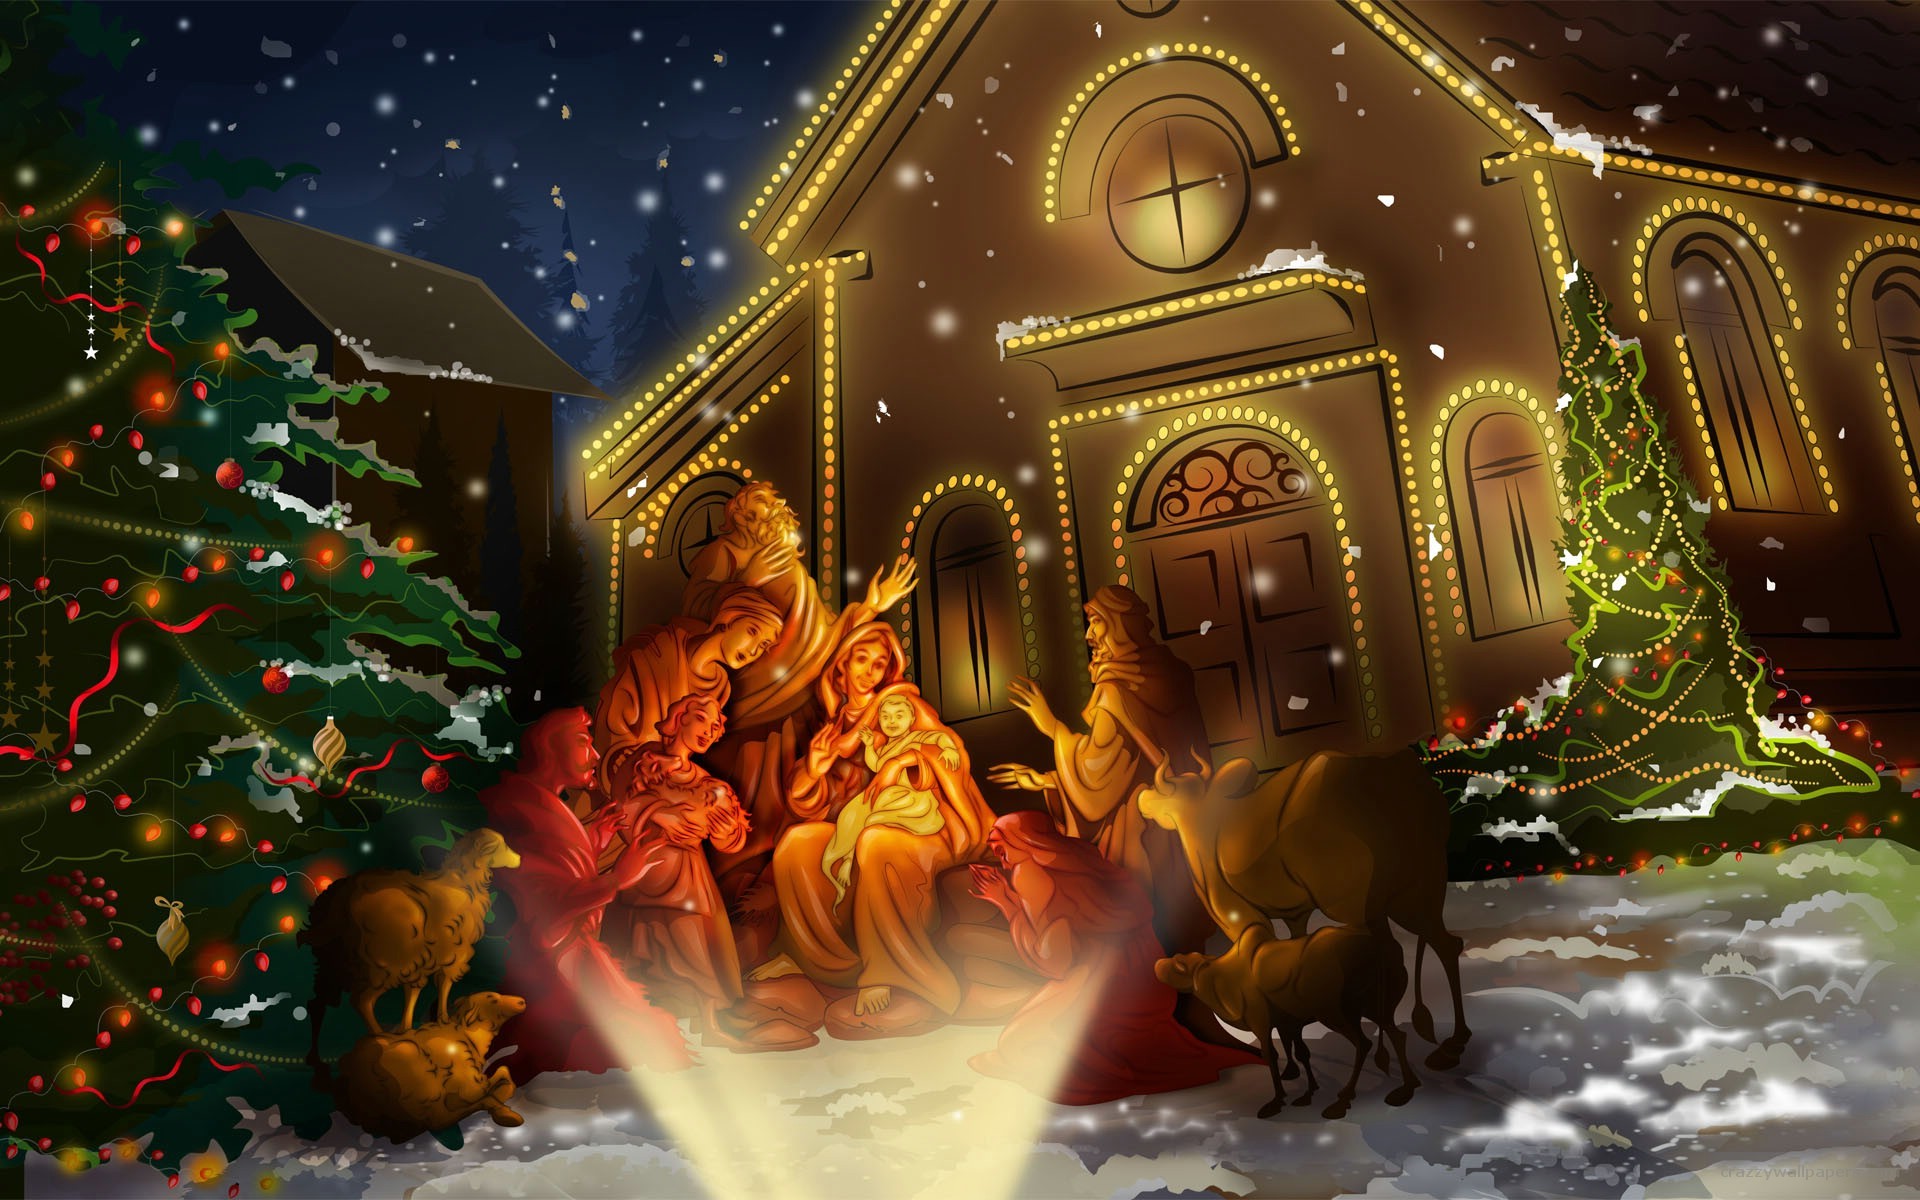 1920x1200 Animated Christian Christmas Images – Happy Holidays! merry-christmas- wallpaper-christmas-desktop-wallpapers | Christmas .